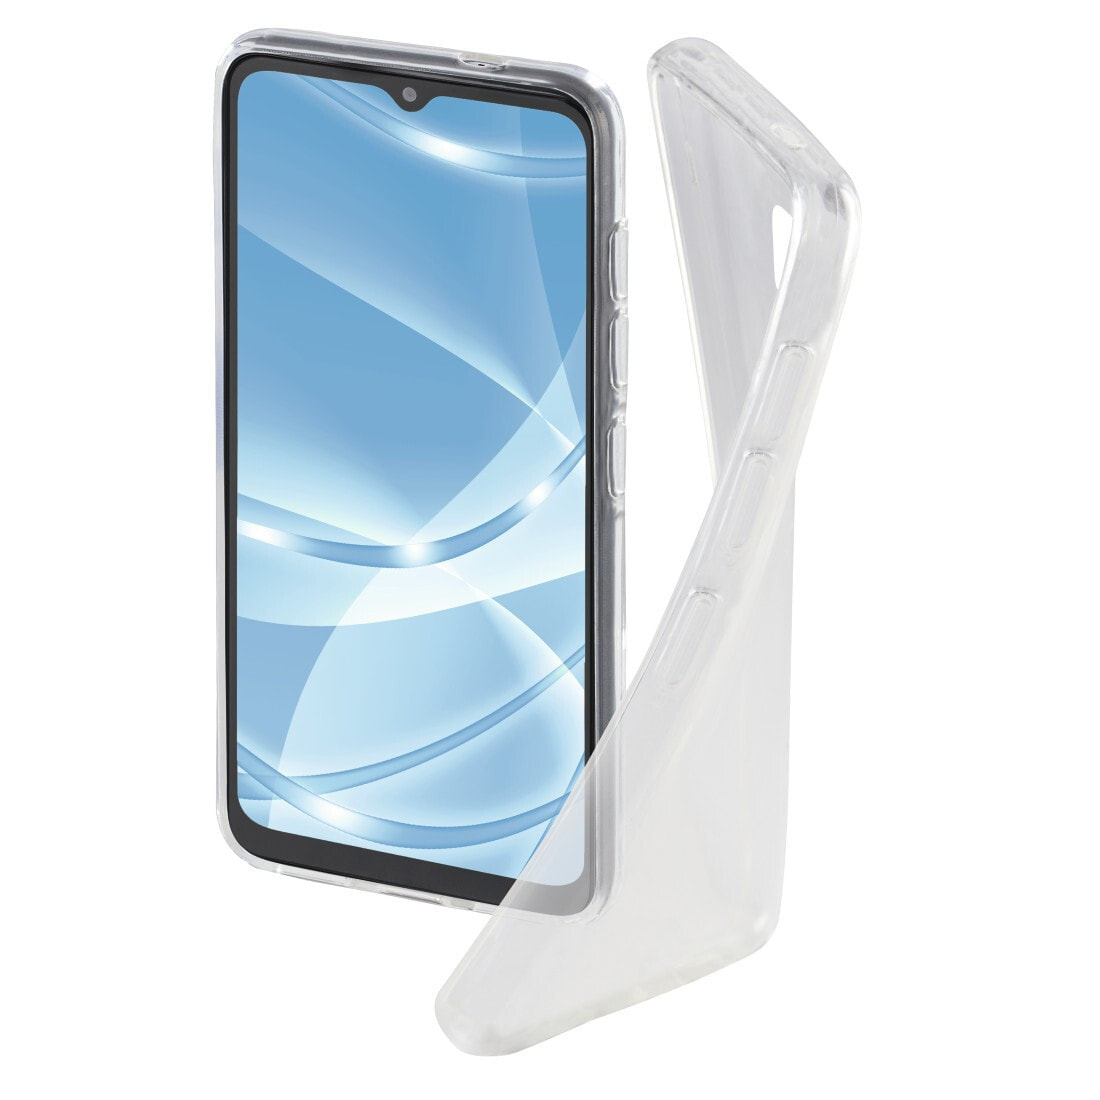 Hama Crystal Clear чехол для мобильного телефона 16,5 cm (6.5